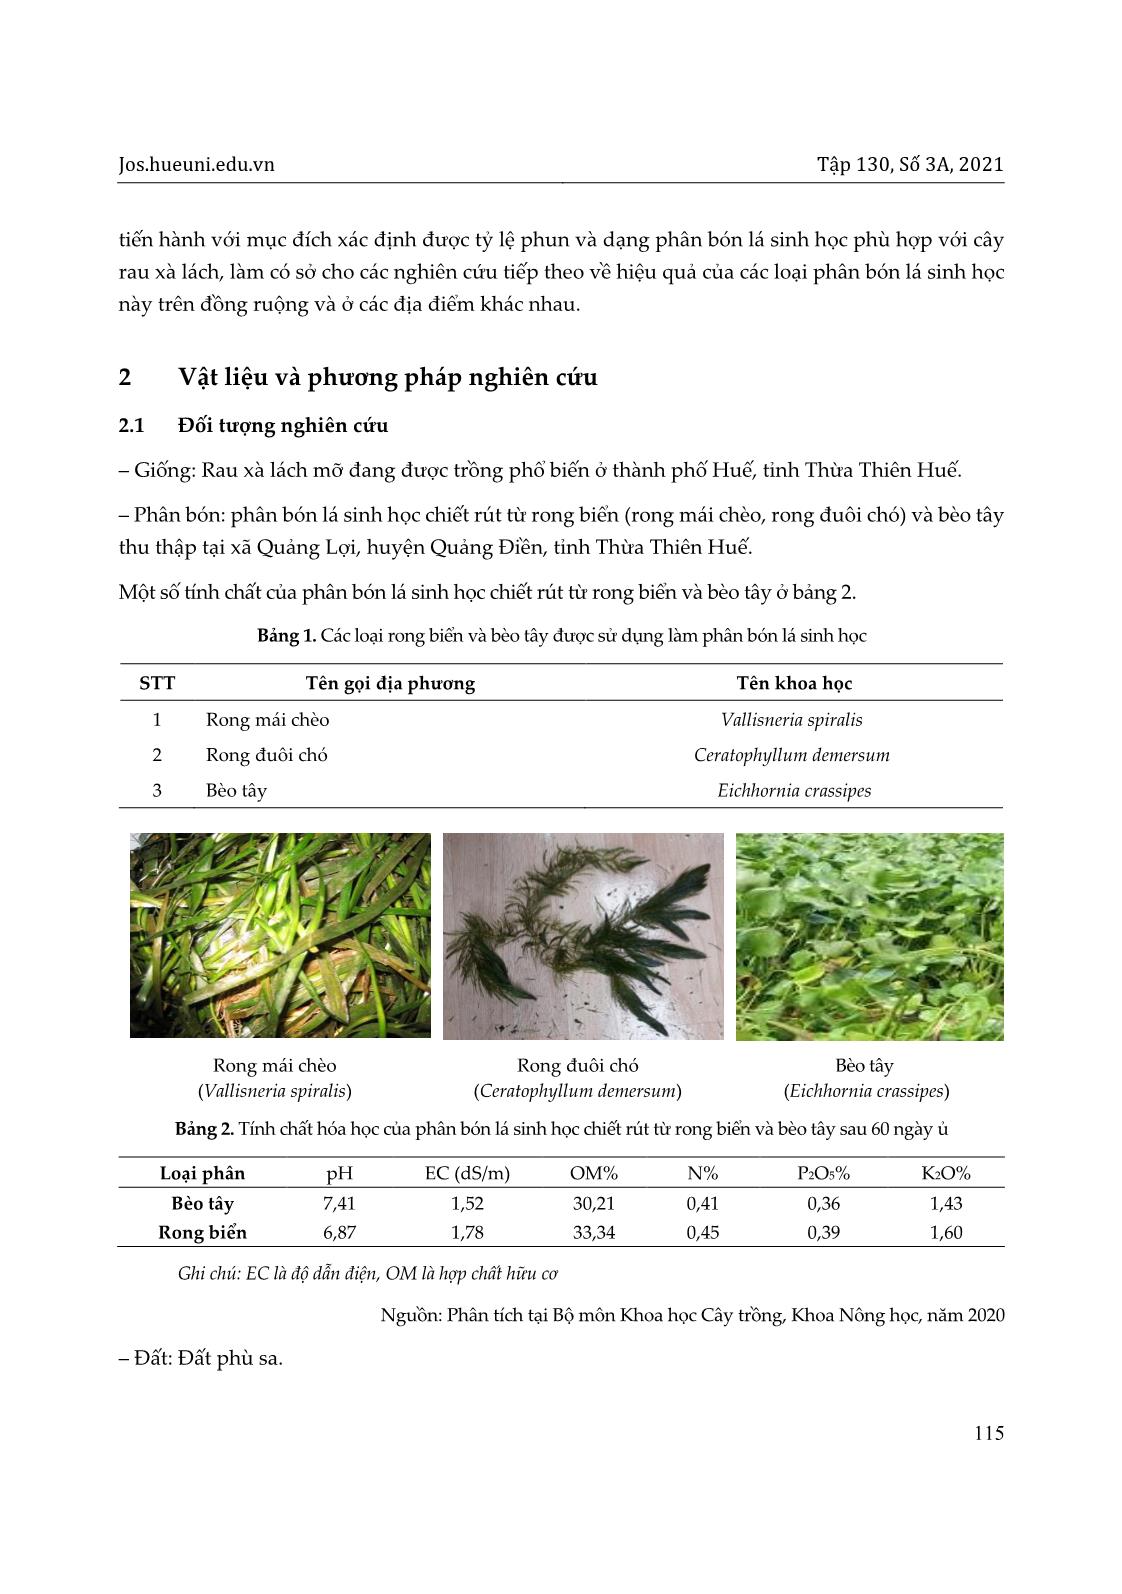 Nghiên cứu ảnh hưởng của tỷ lệ phun phân bón lá sinh học từ rong biển và bèo tây đến cây rau xà lách tại thành phố Huế, tỉnh Thừa Thiên Huế trang 3